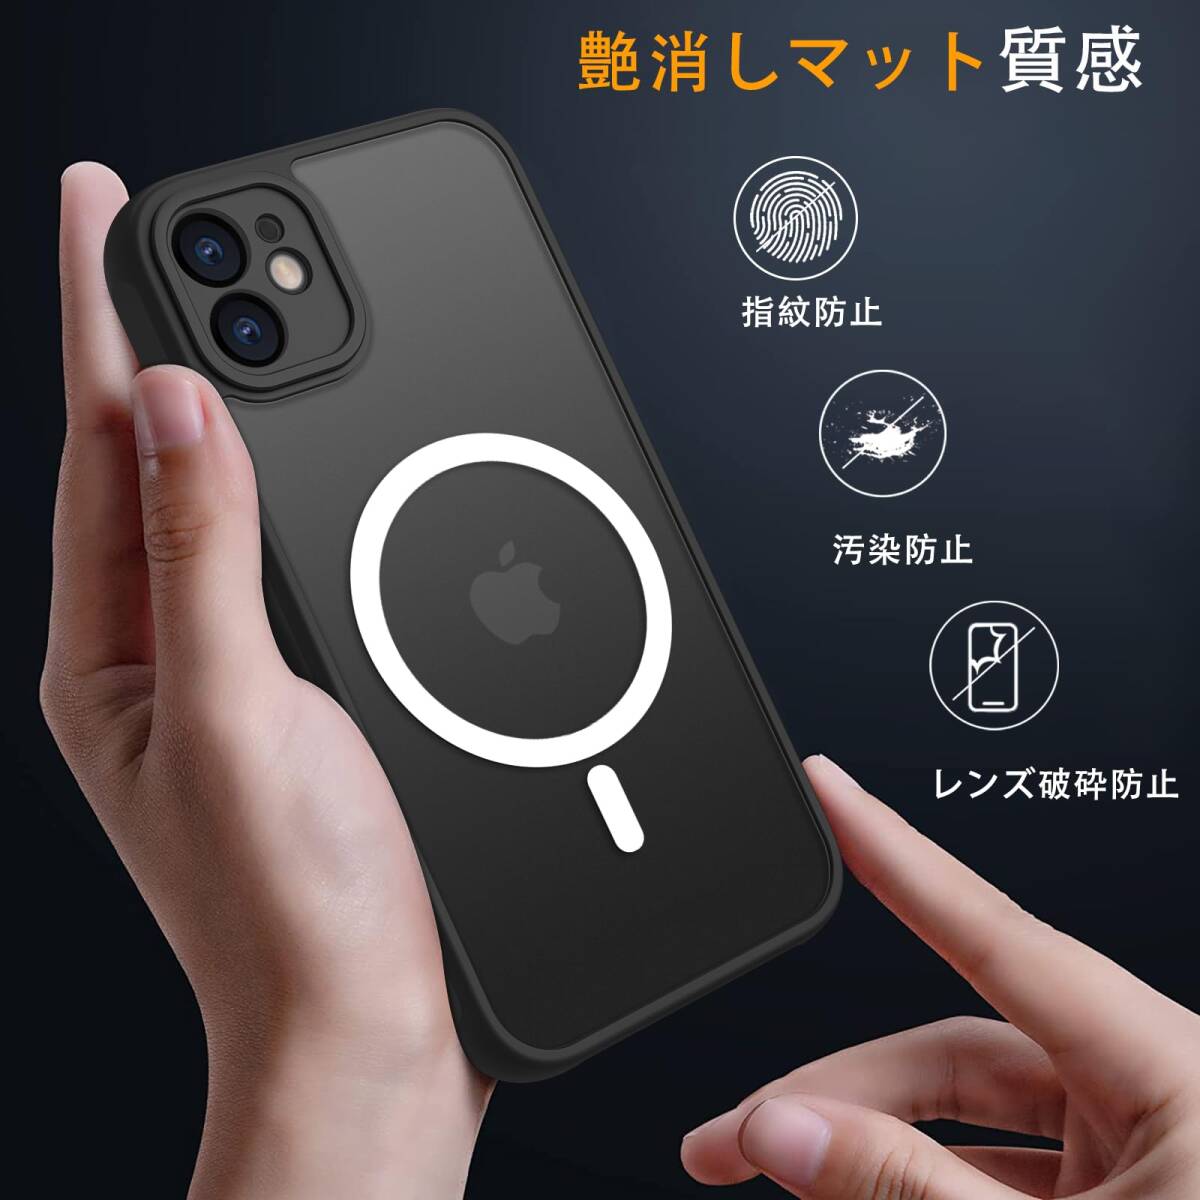 【特価商品】マグネット搭載 アイフォン 12ミニ カバー 用 カバー 耐衝撃 iphone12ミニ マット感 スマホケース Mag